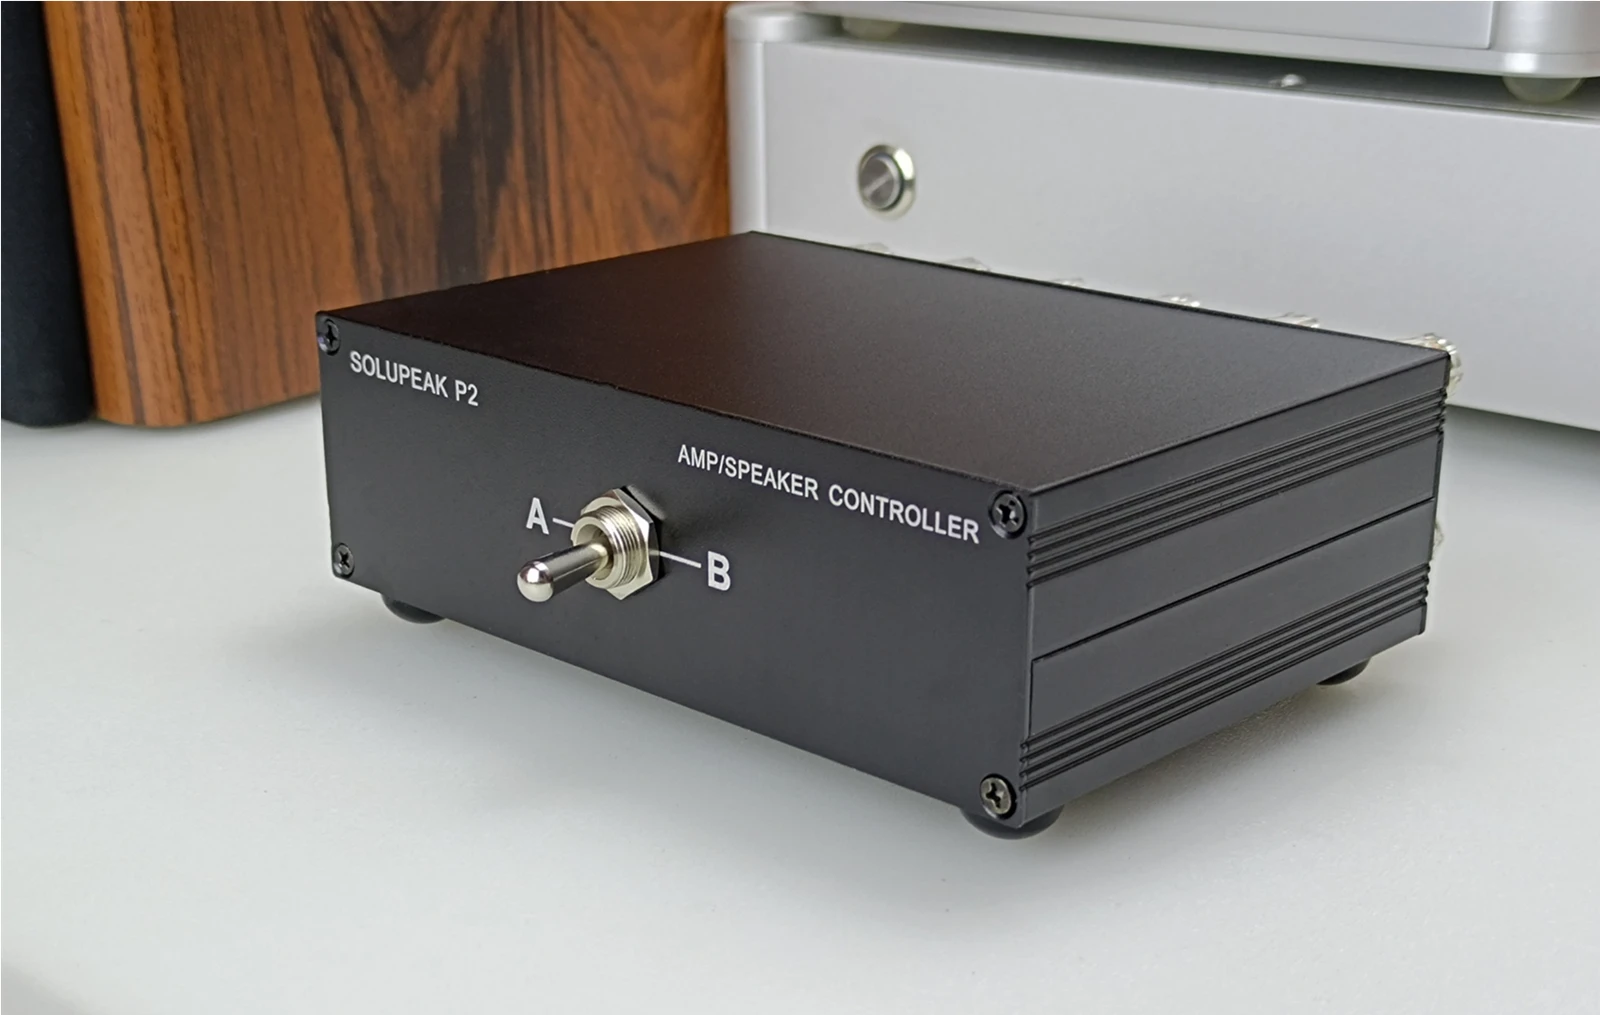 Amplificateur amplificateur/haut-parleur à 2 voies, boîte de commutation de sélection de haut-parleur, commutateur de source de signal d'entrée audio stéréo passif pour audio hifi